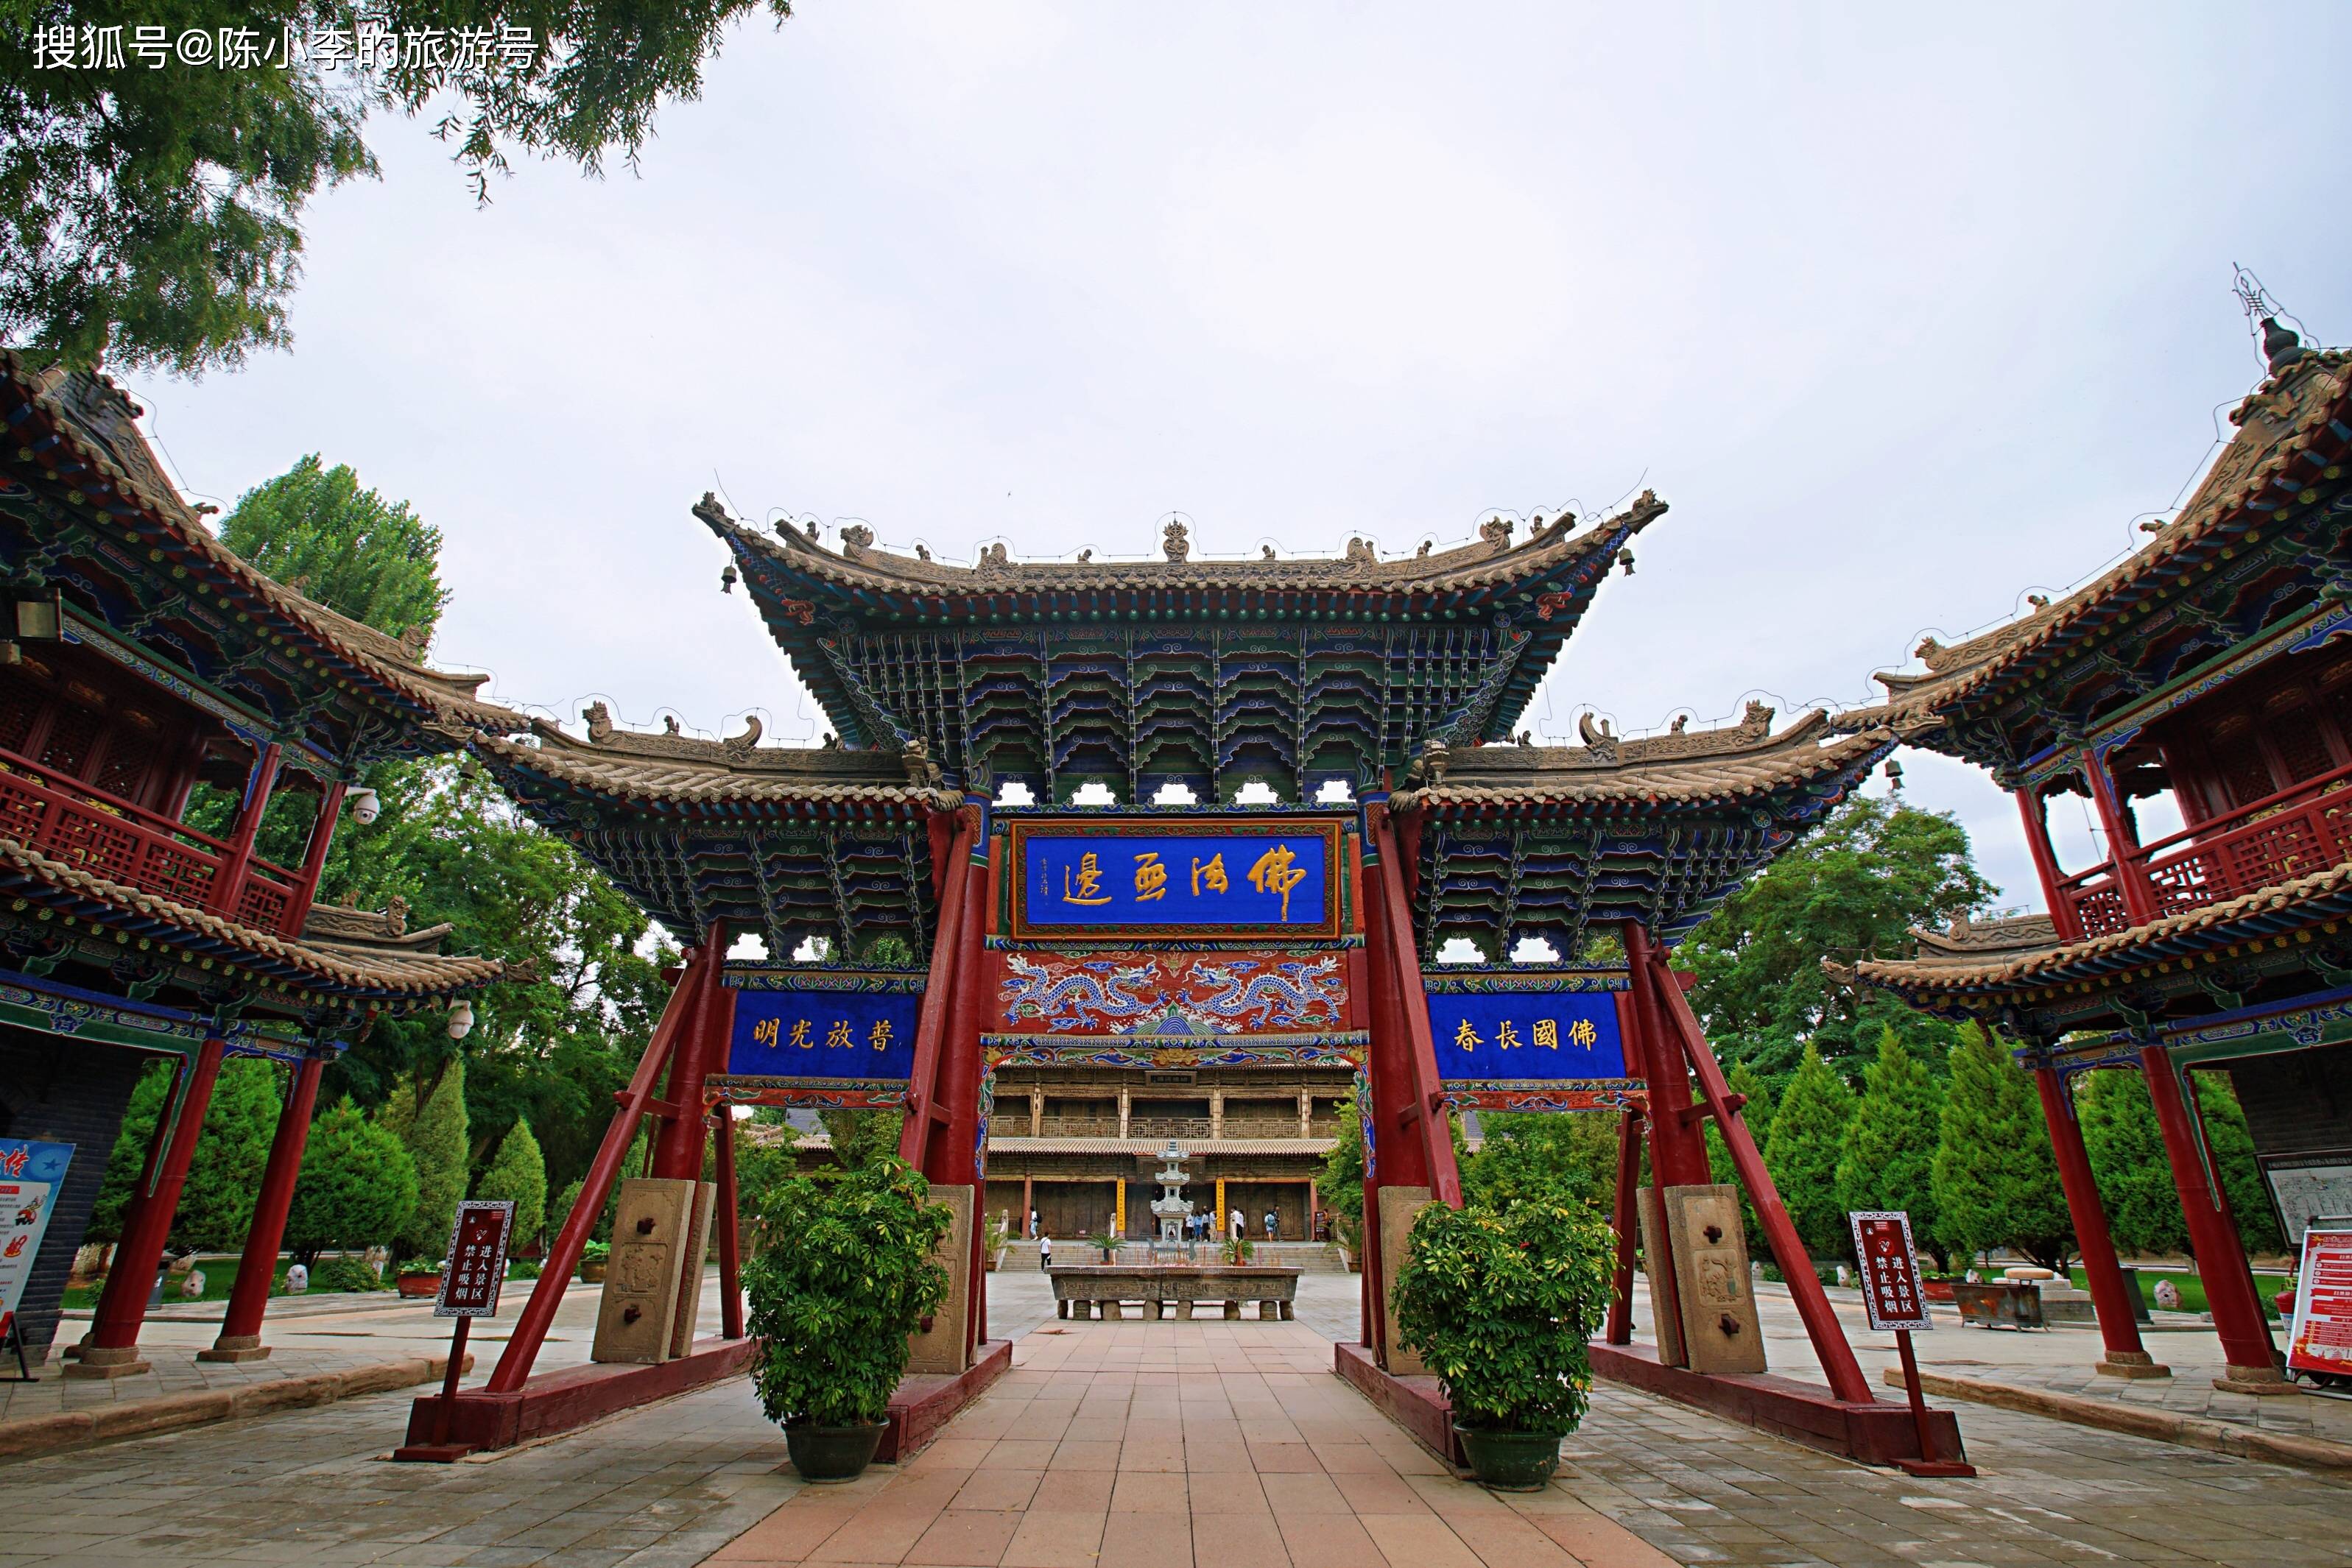 甘肃张掖市大佛寺,丝绸之路上的千年古刹 ,闻名国内外